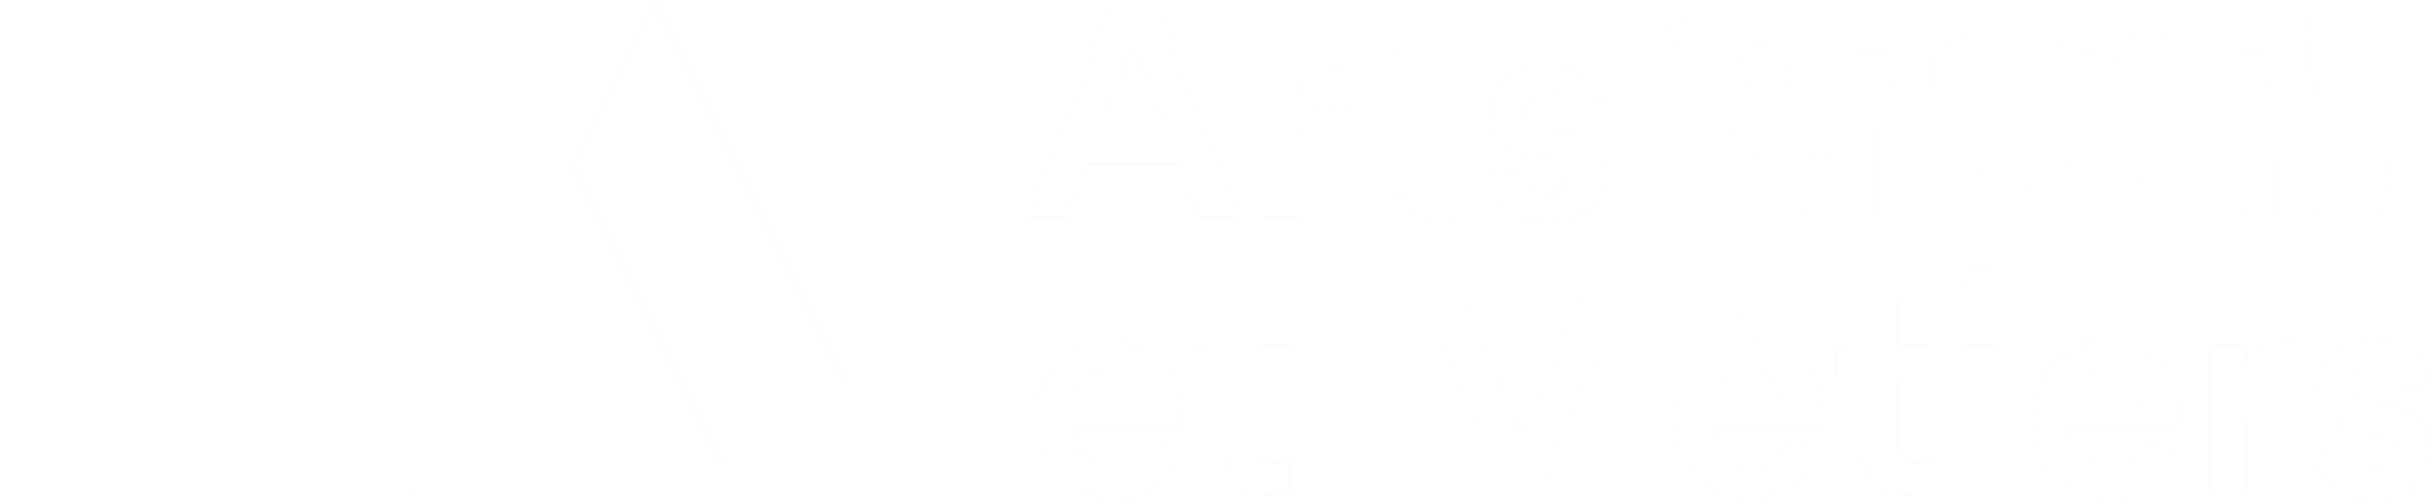 Arts et Métiers Sciences et Technologies